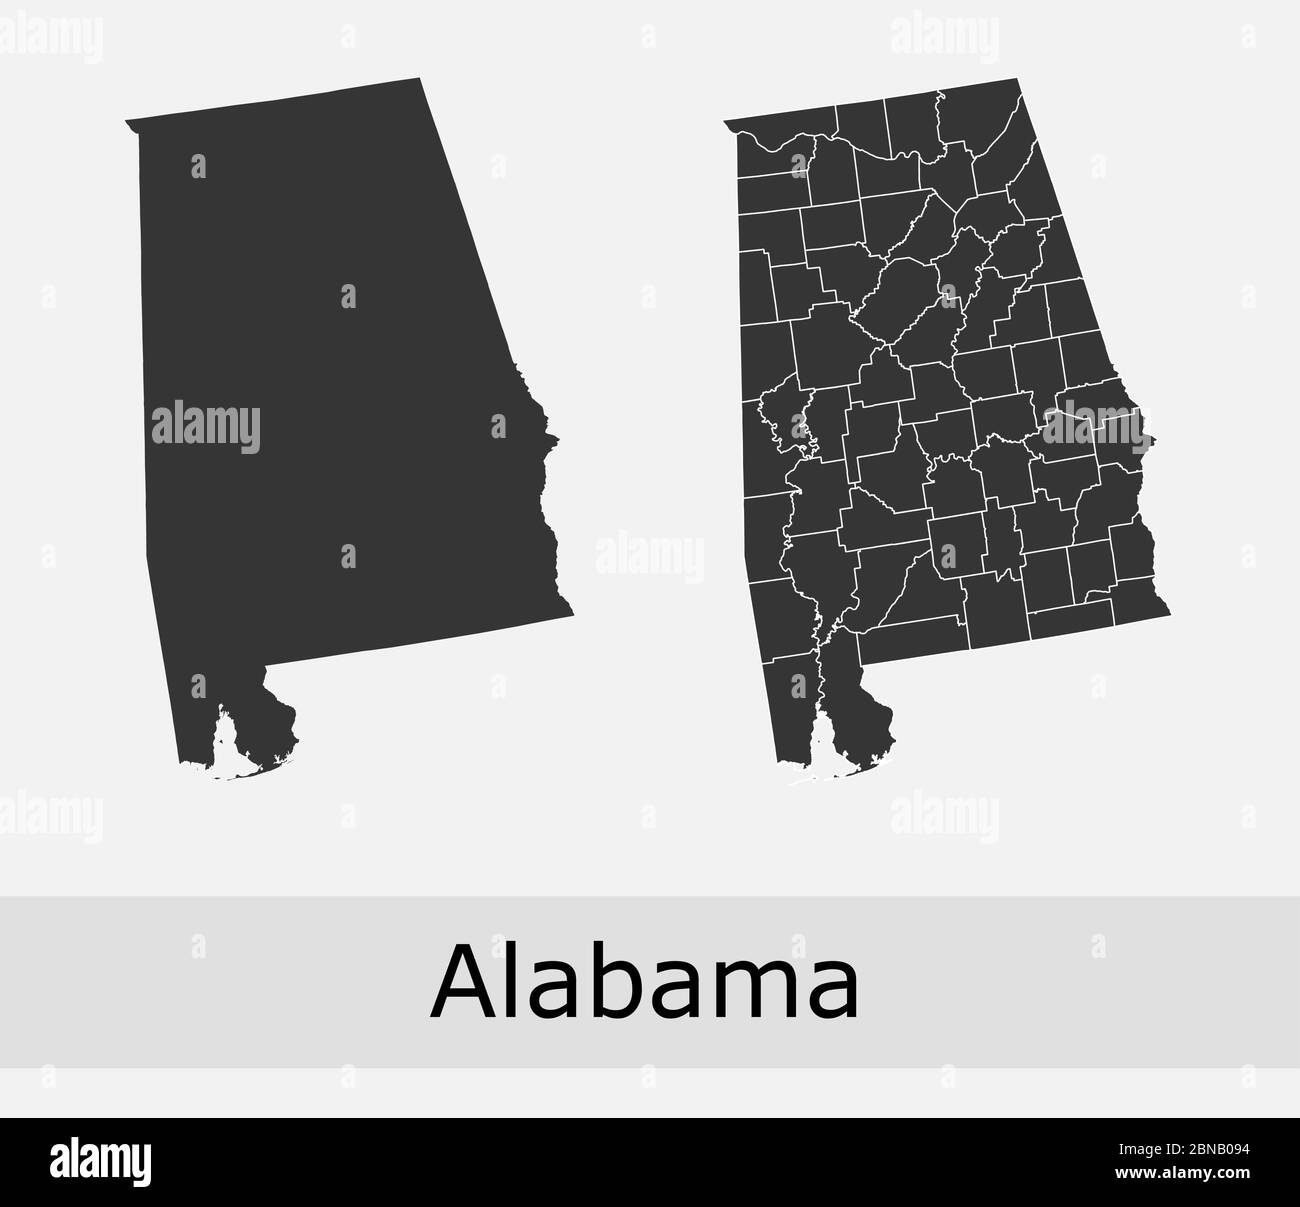 Cartes de l'Alabama cartes vectorielles comtés, cantons, régions, municipalités, départements, frontières Illustration de Vecteur